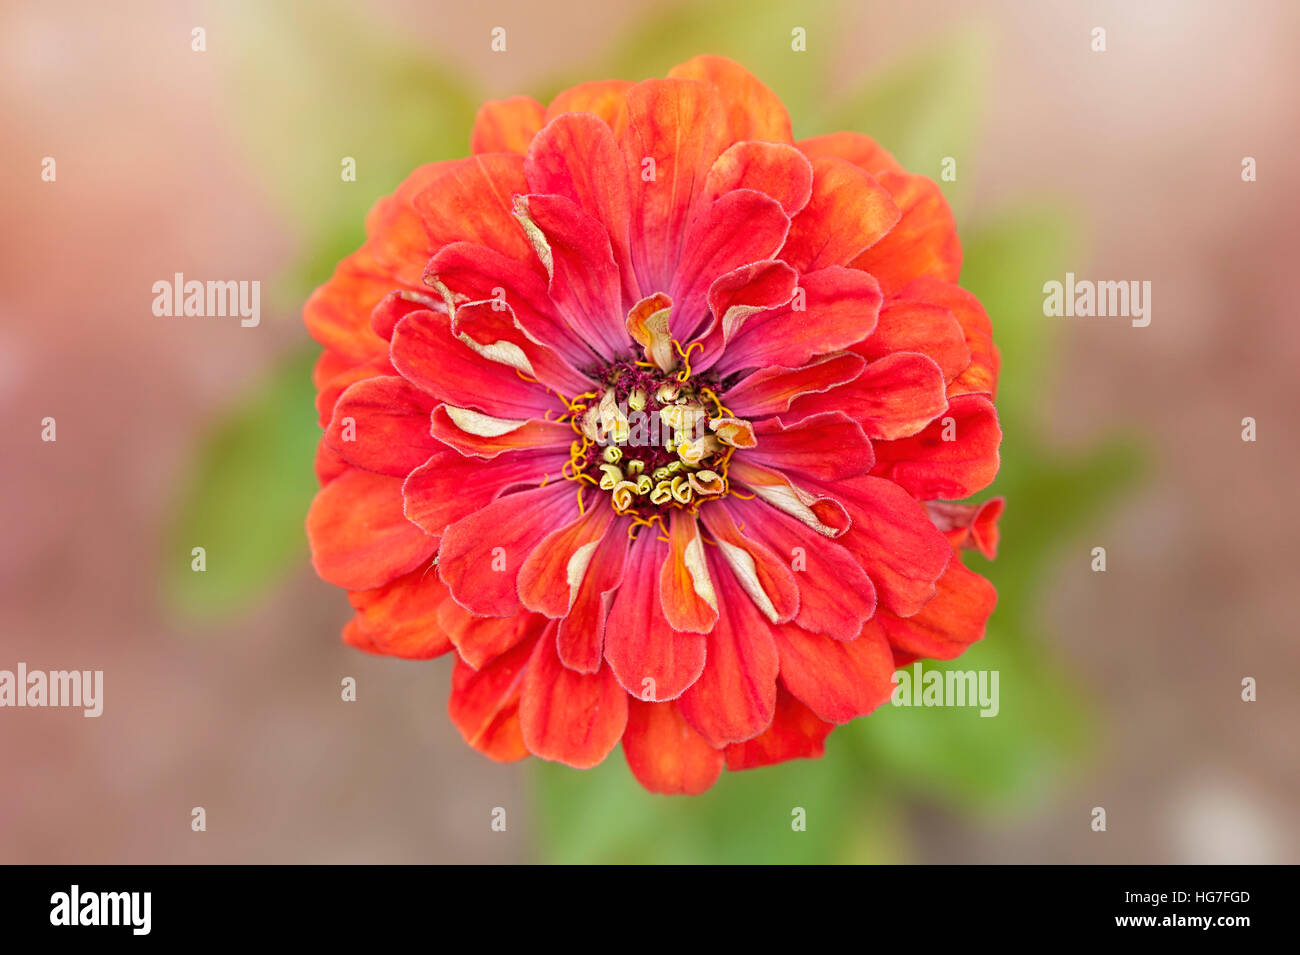 Fleur Zinnia orange vif contre un fond mou Banque D'Images